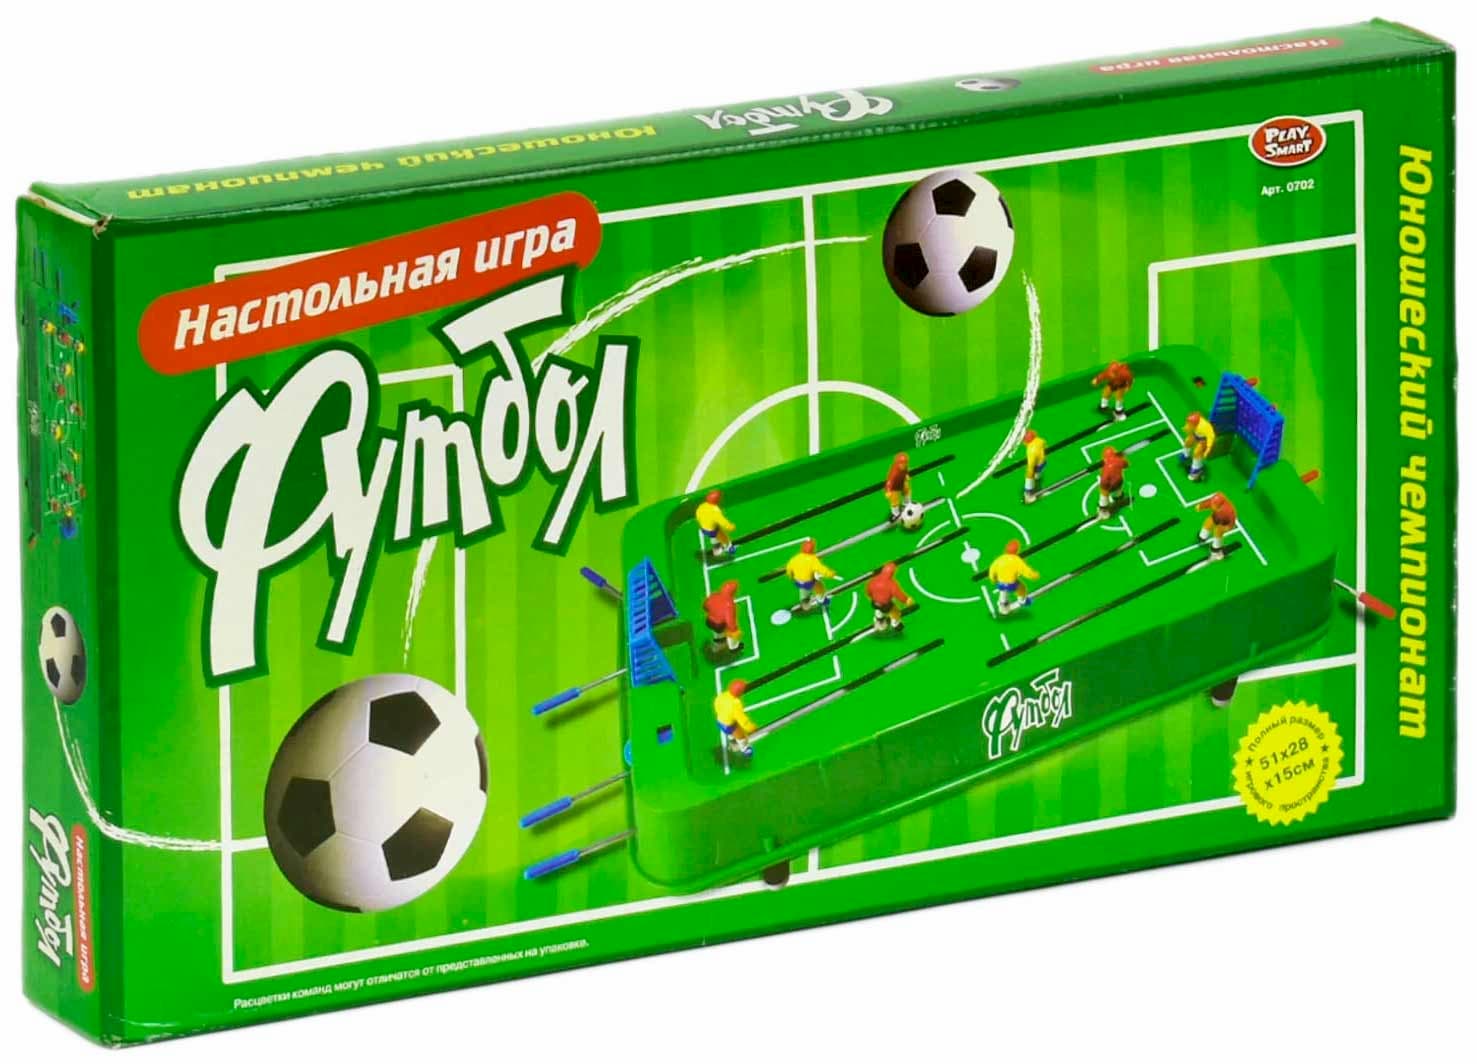 Настольная игра Play Smart «Футбол» 0702, 45 x 27,5 x 5,5 см.